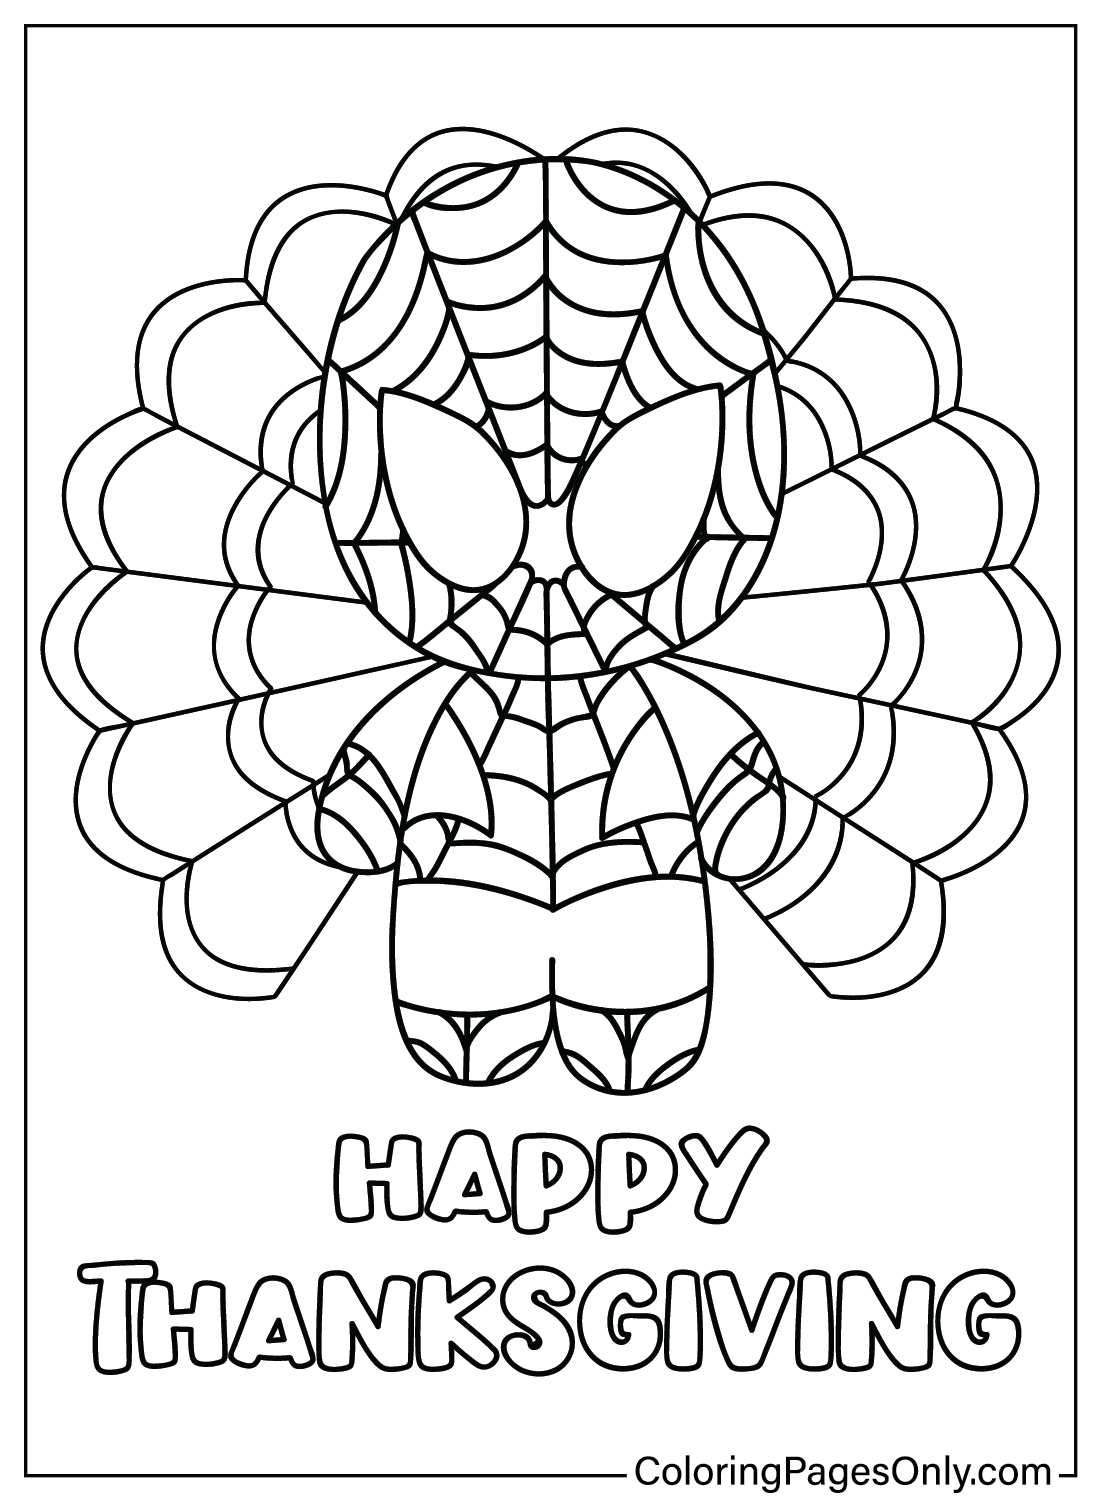 Página para colorear de Spider-Man de Acción de Gracias de dibujos animados de Acción de Gracias